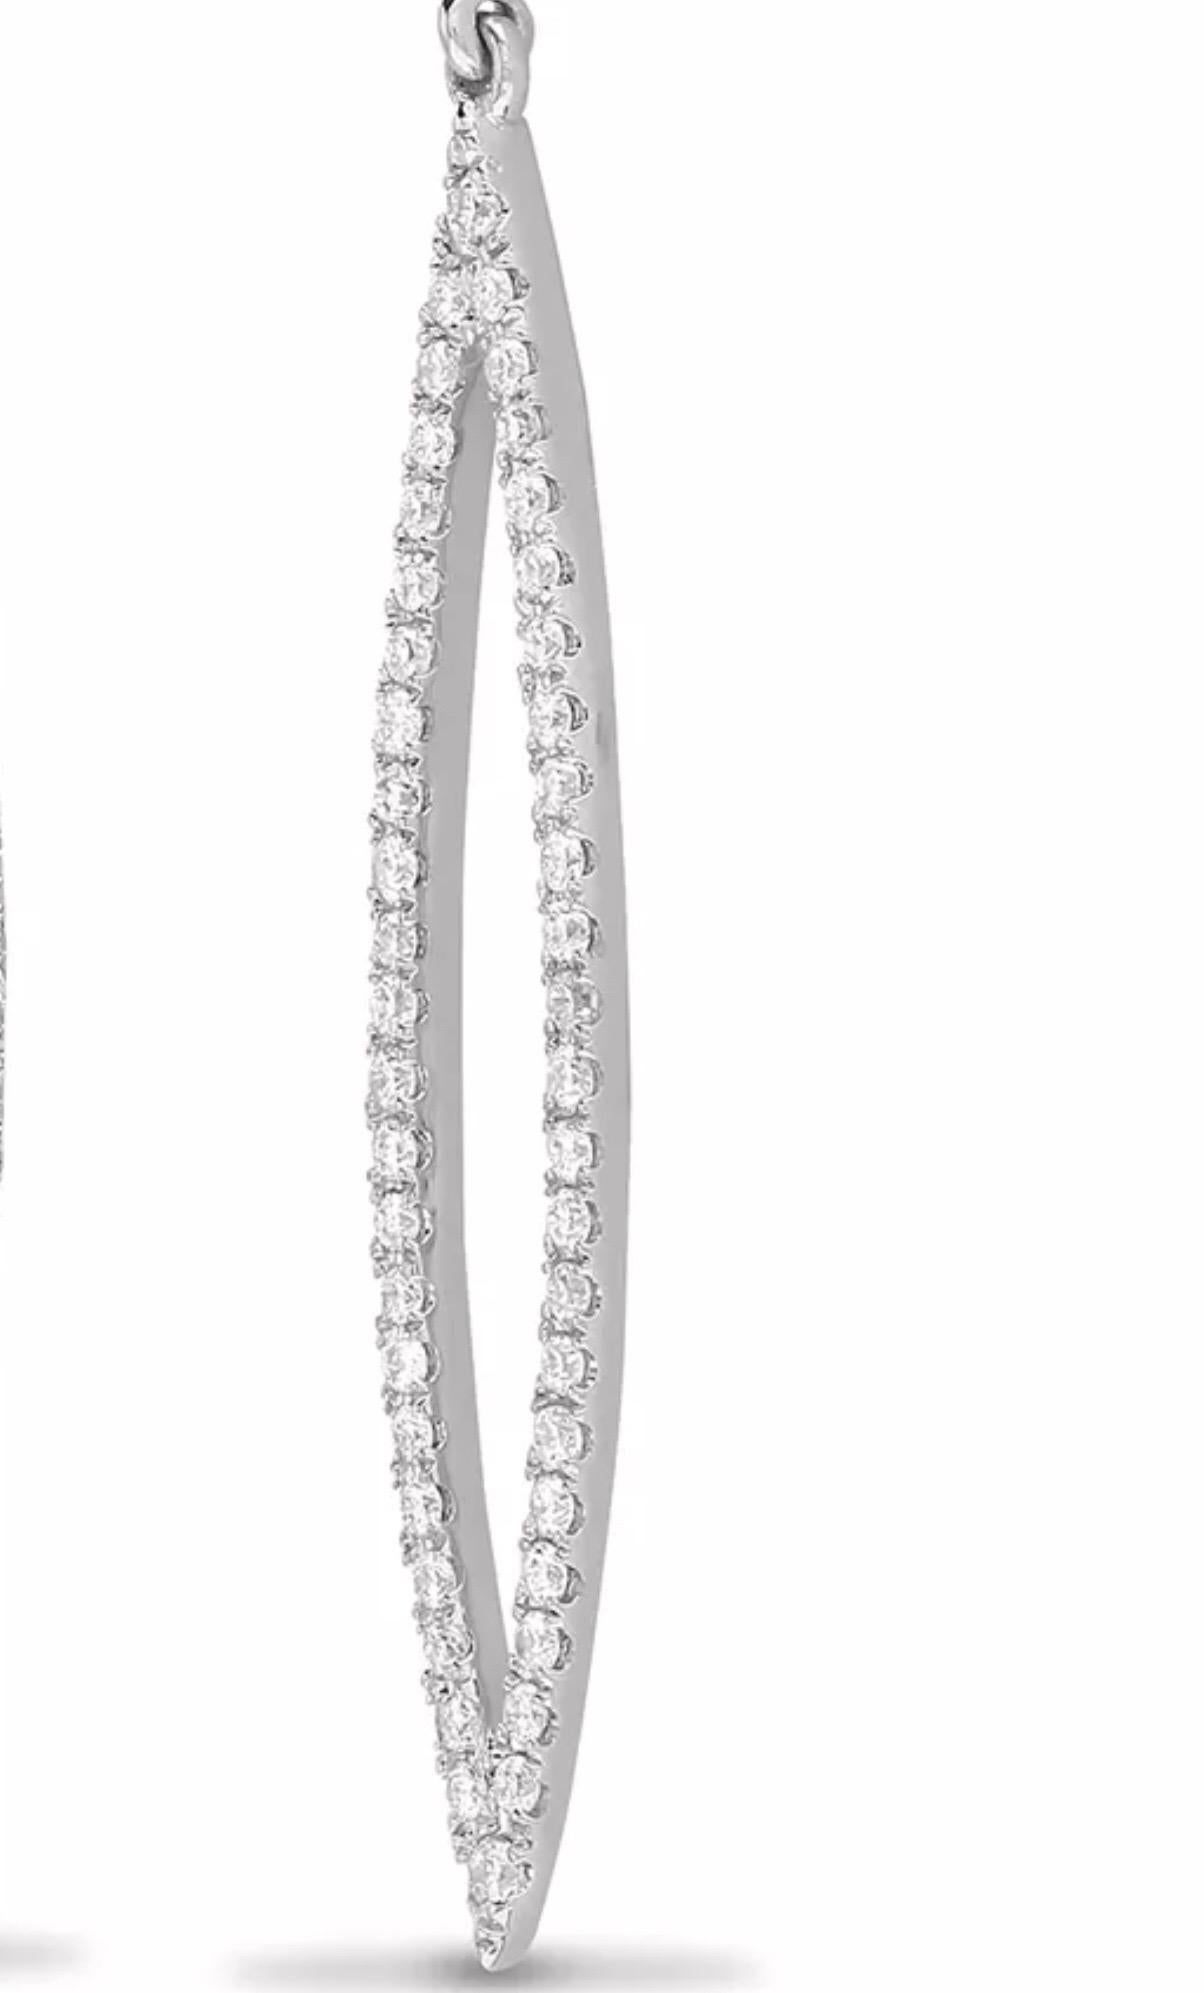 Moderne Ohrringe aus massivem 18-karätigem Weißgold mit runden Diamanten im Brillantschliff,  mit 0,60 Karat weißen Diamanten, Farbe G und Reinheit SI, elegant präsentiert in Form einer Sternschnuppe. ohrstecker aus 18 Karat Gold und Schmetterling.